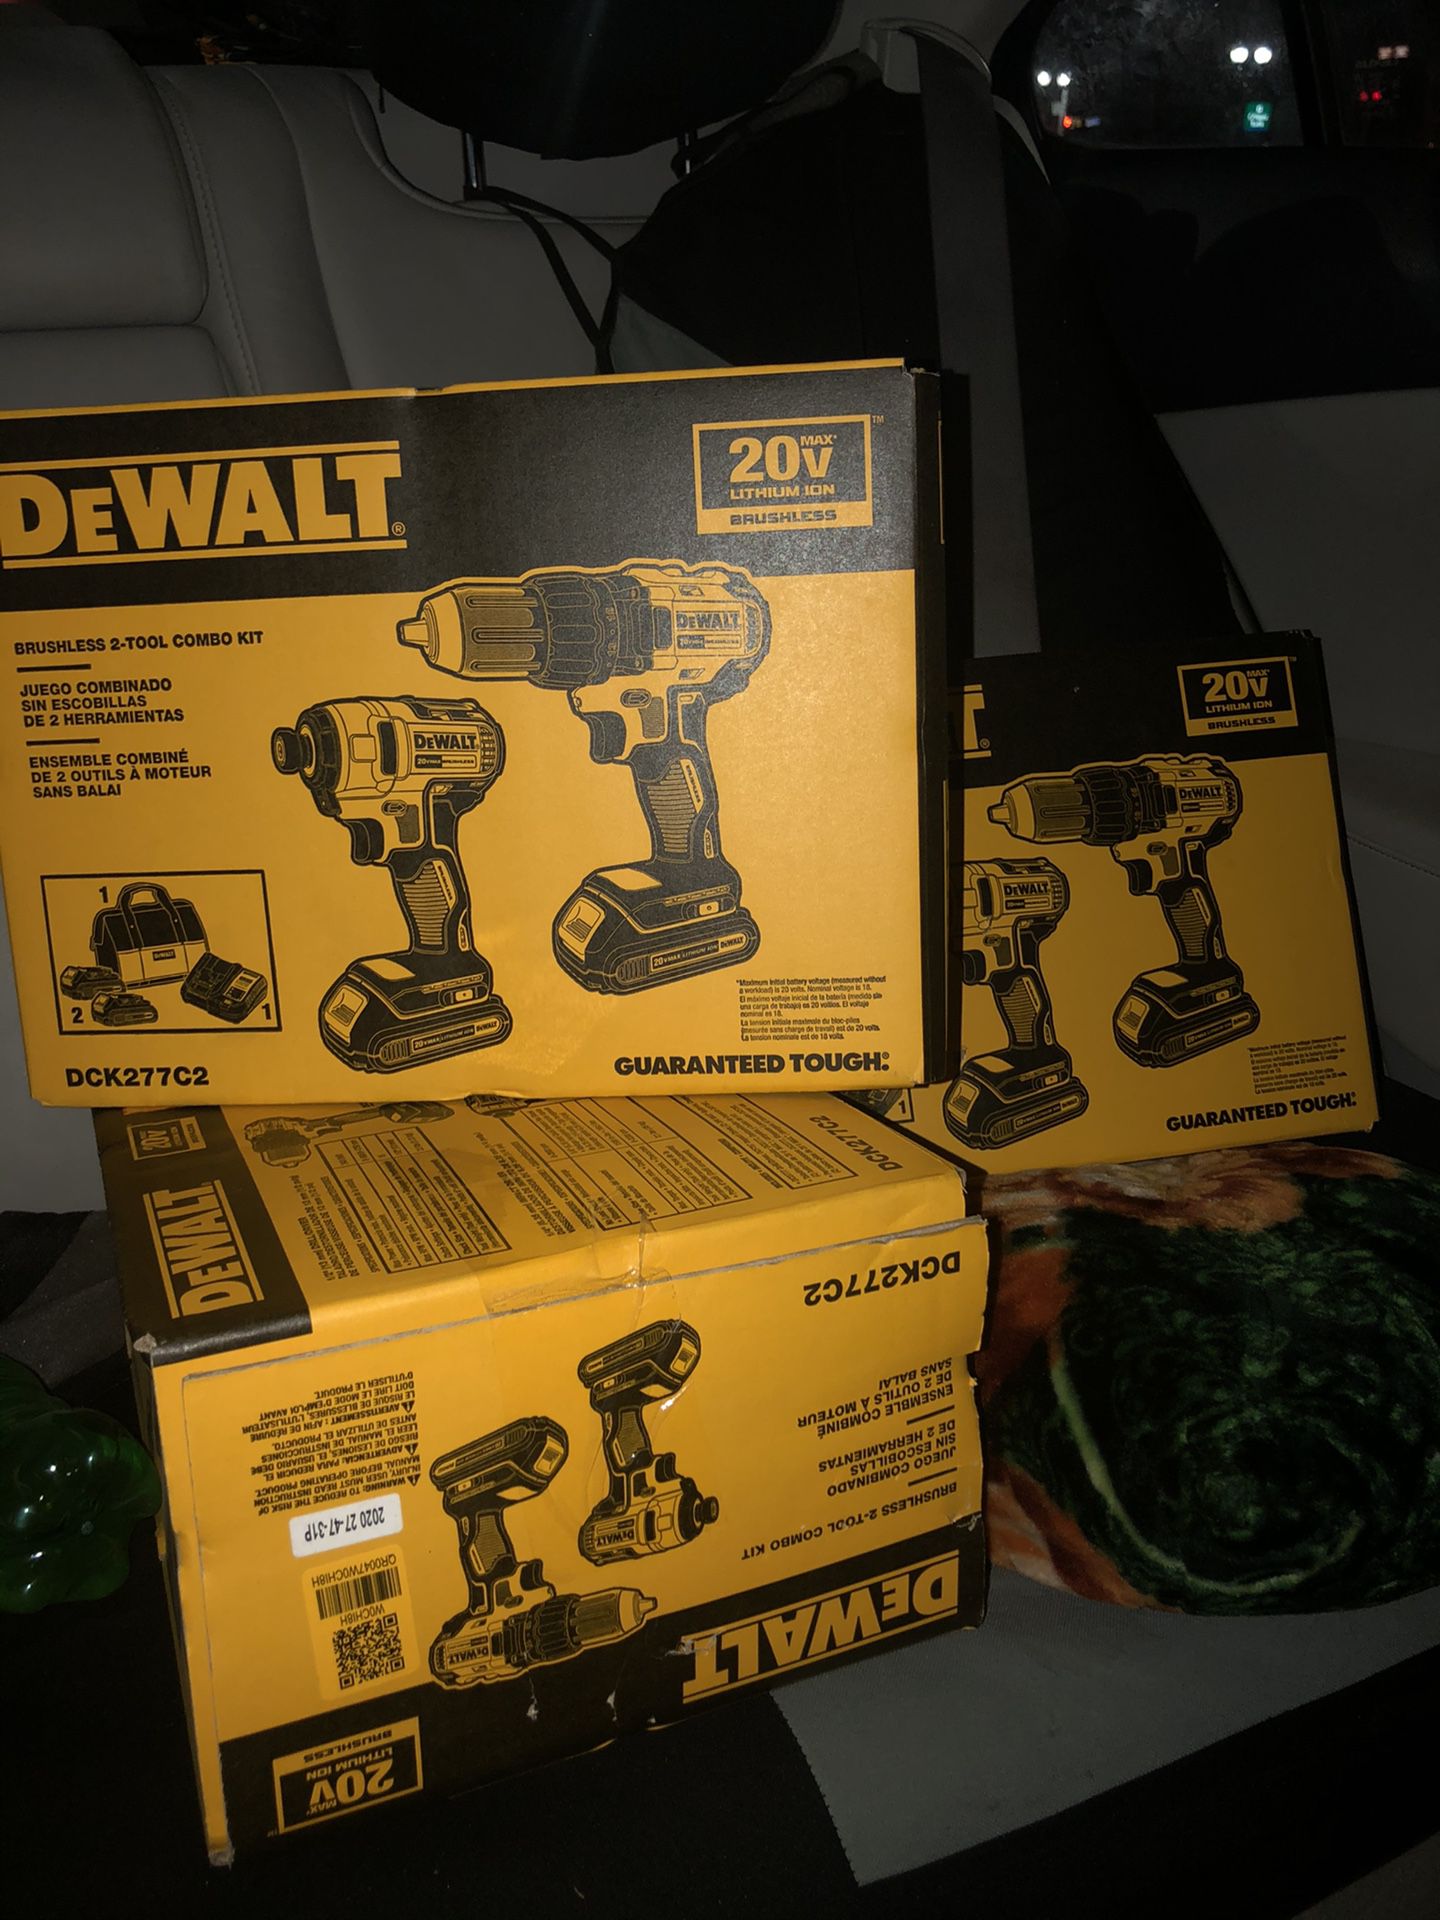 3 Dewalt Brushless 2 tool combo kit